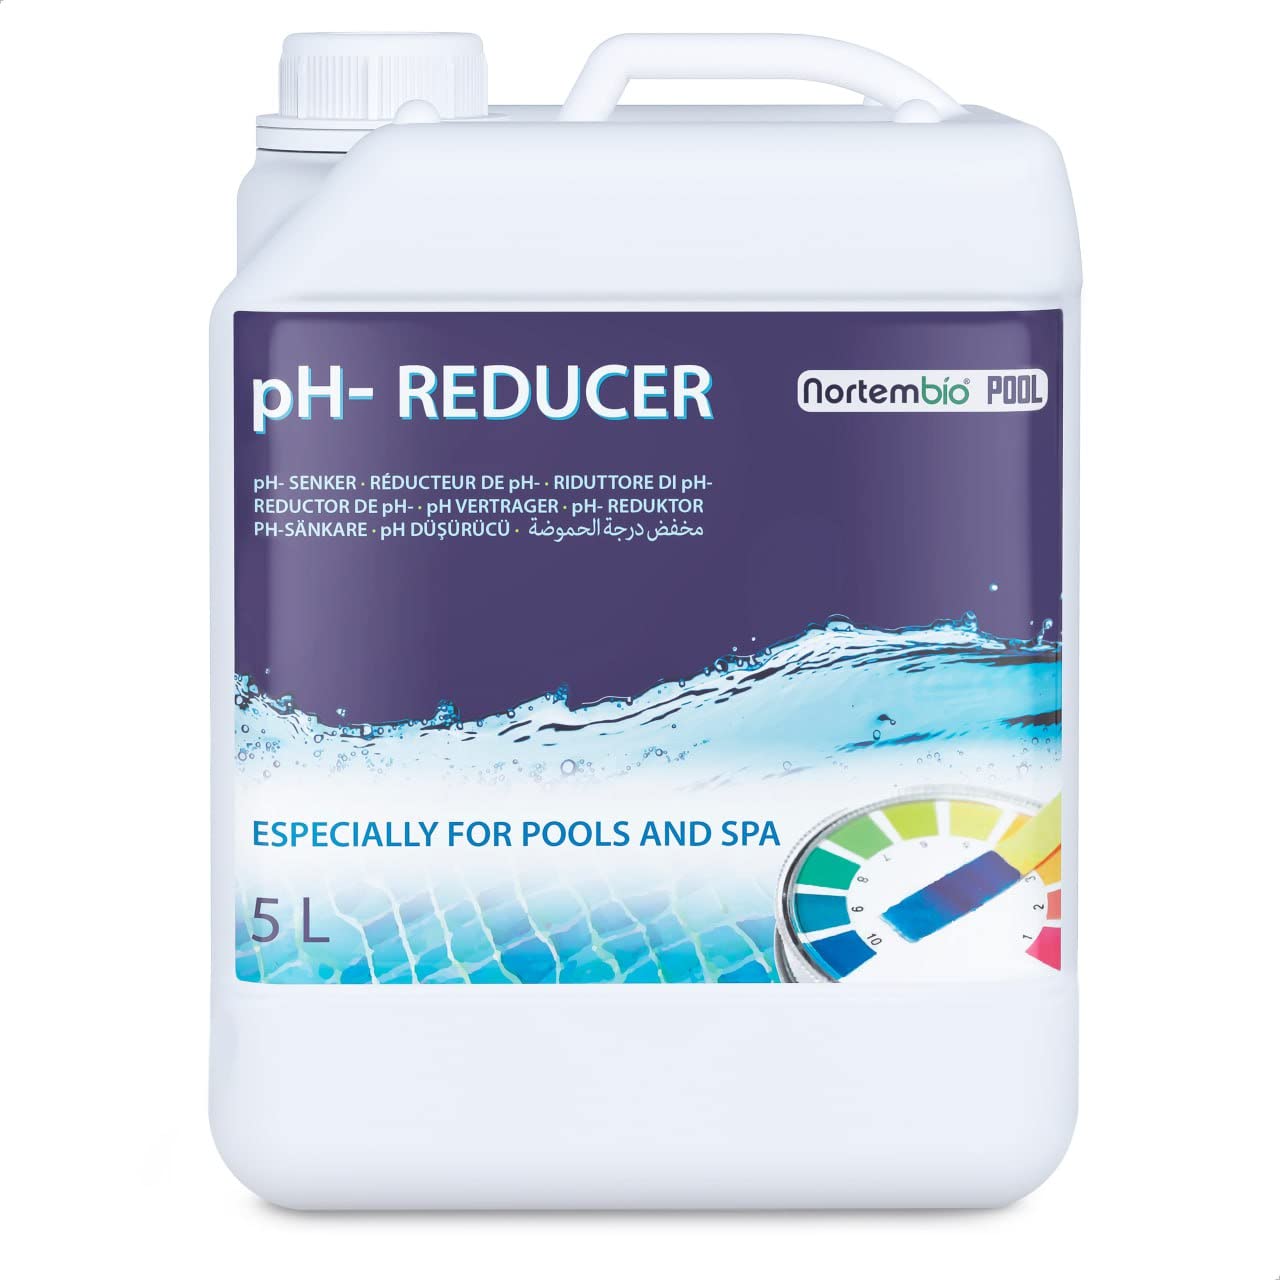 Nortembio Pool pH- Minus 5 L, Organischer pH- Senker für Schwimmbad und Spa. Erhöhung der Wasserqualität, pH-Regulierung, Vorteilhaft für die Gesundheit.